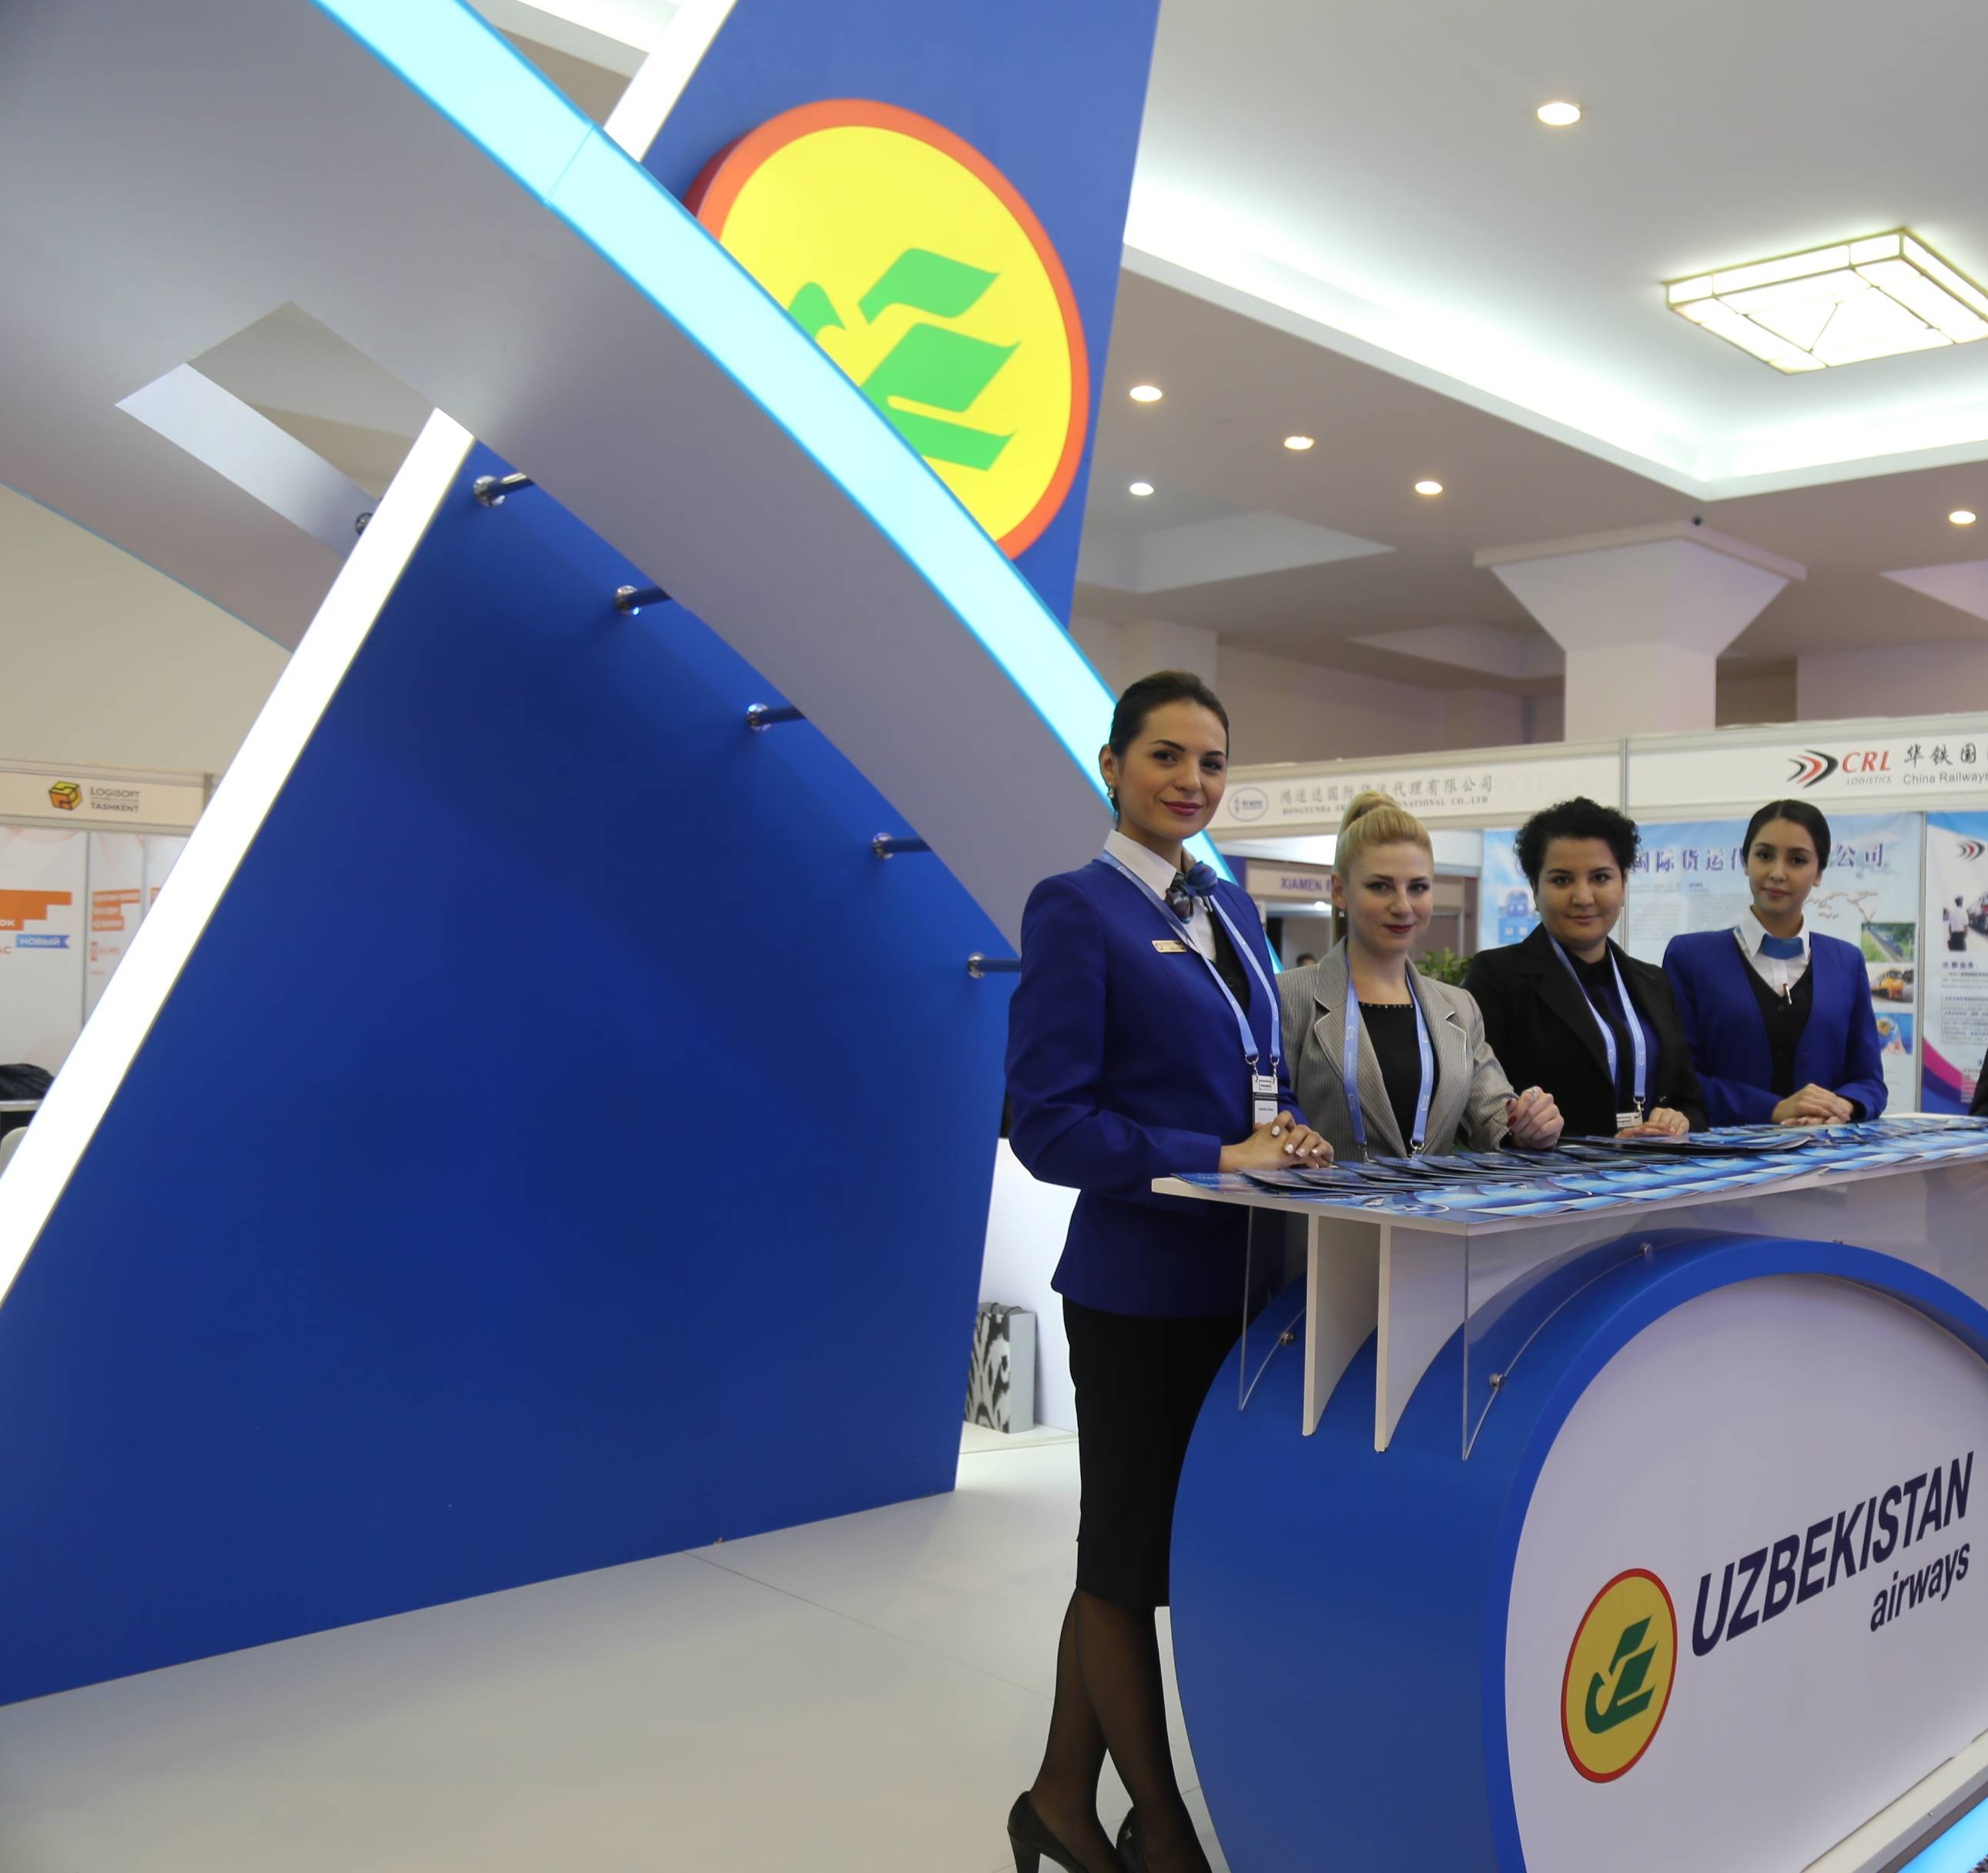 Аир молдова - регистрация на рейс онлайн и в аэровокзале